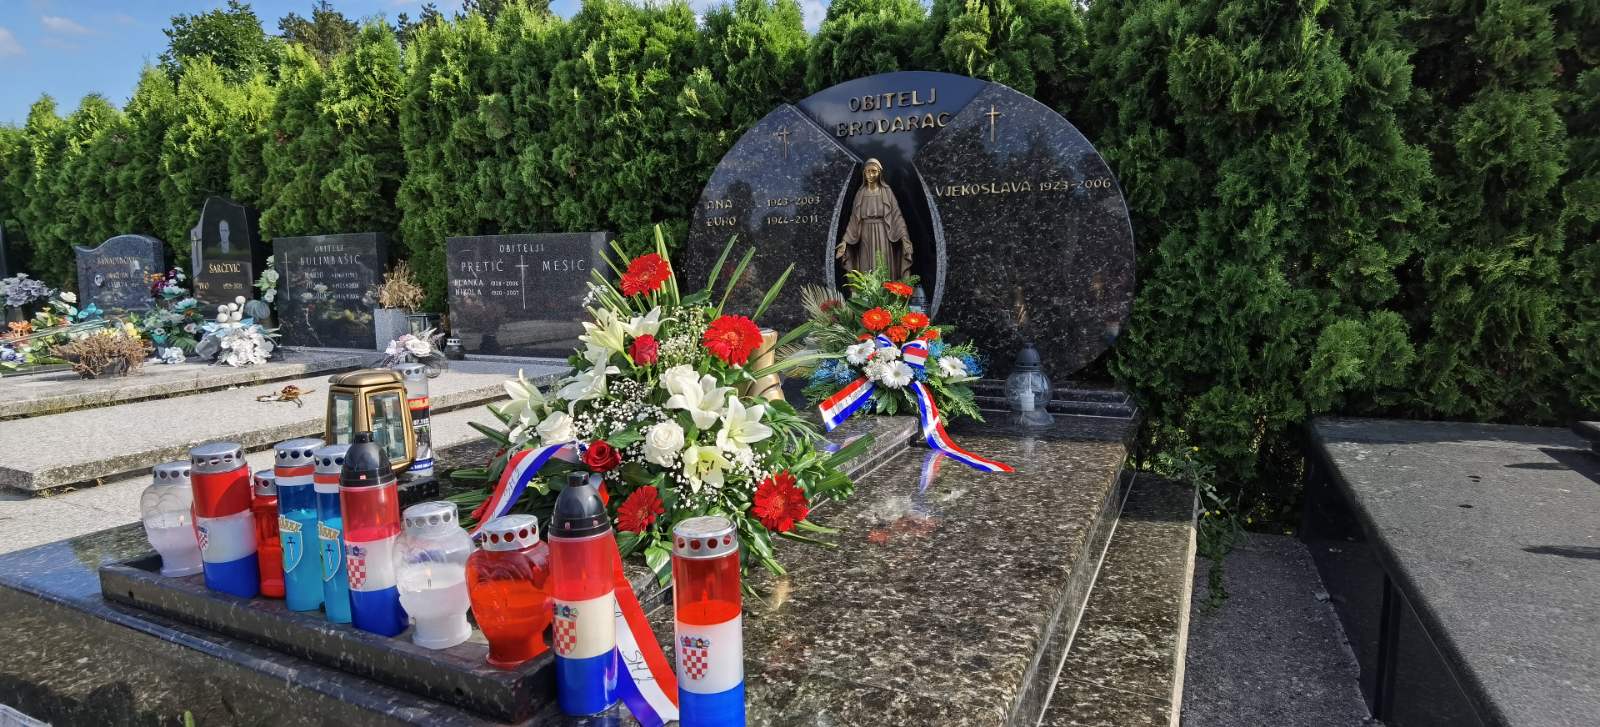 Župan Ivan Celjak je u srijedu, 13. srpnja 2022. godine, na sisačkom groblju Viktorovac odao počast Đuri Brodarcu, prvom sisačko-moslavačkom županu, koji je preminuo 2011. godine.